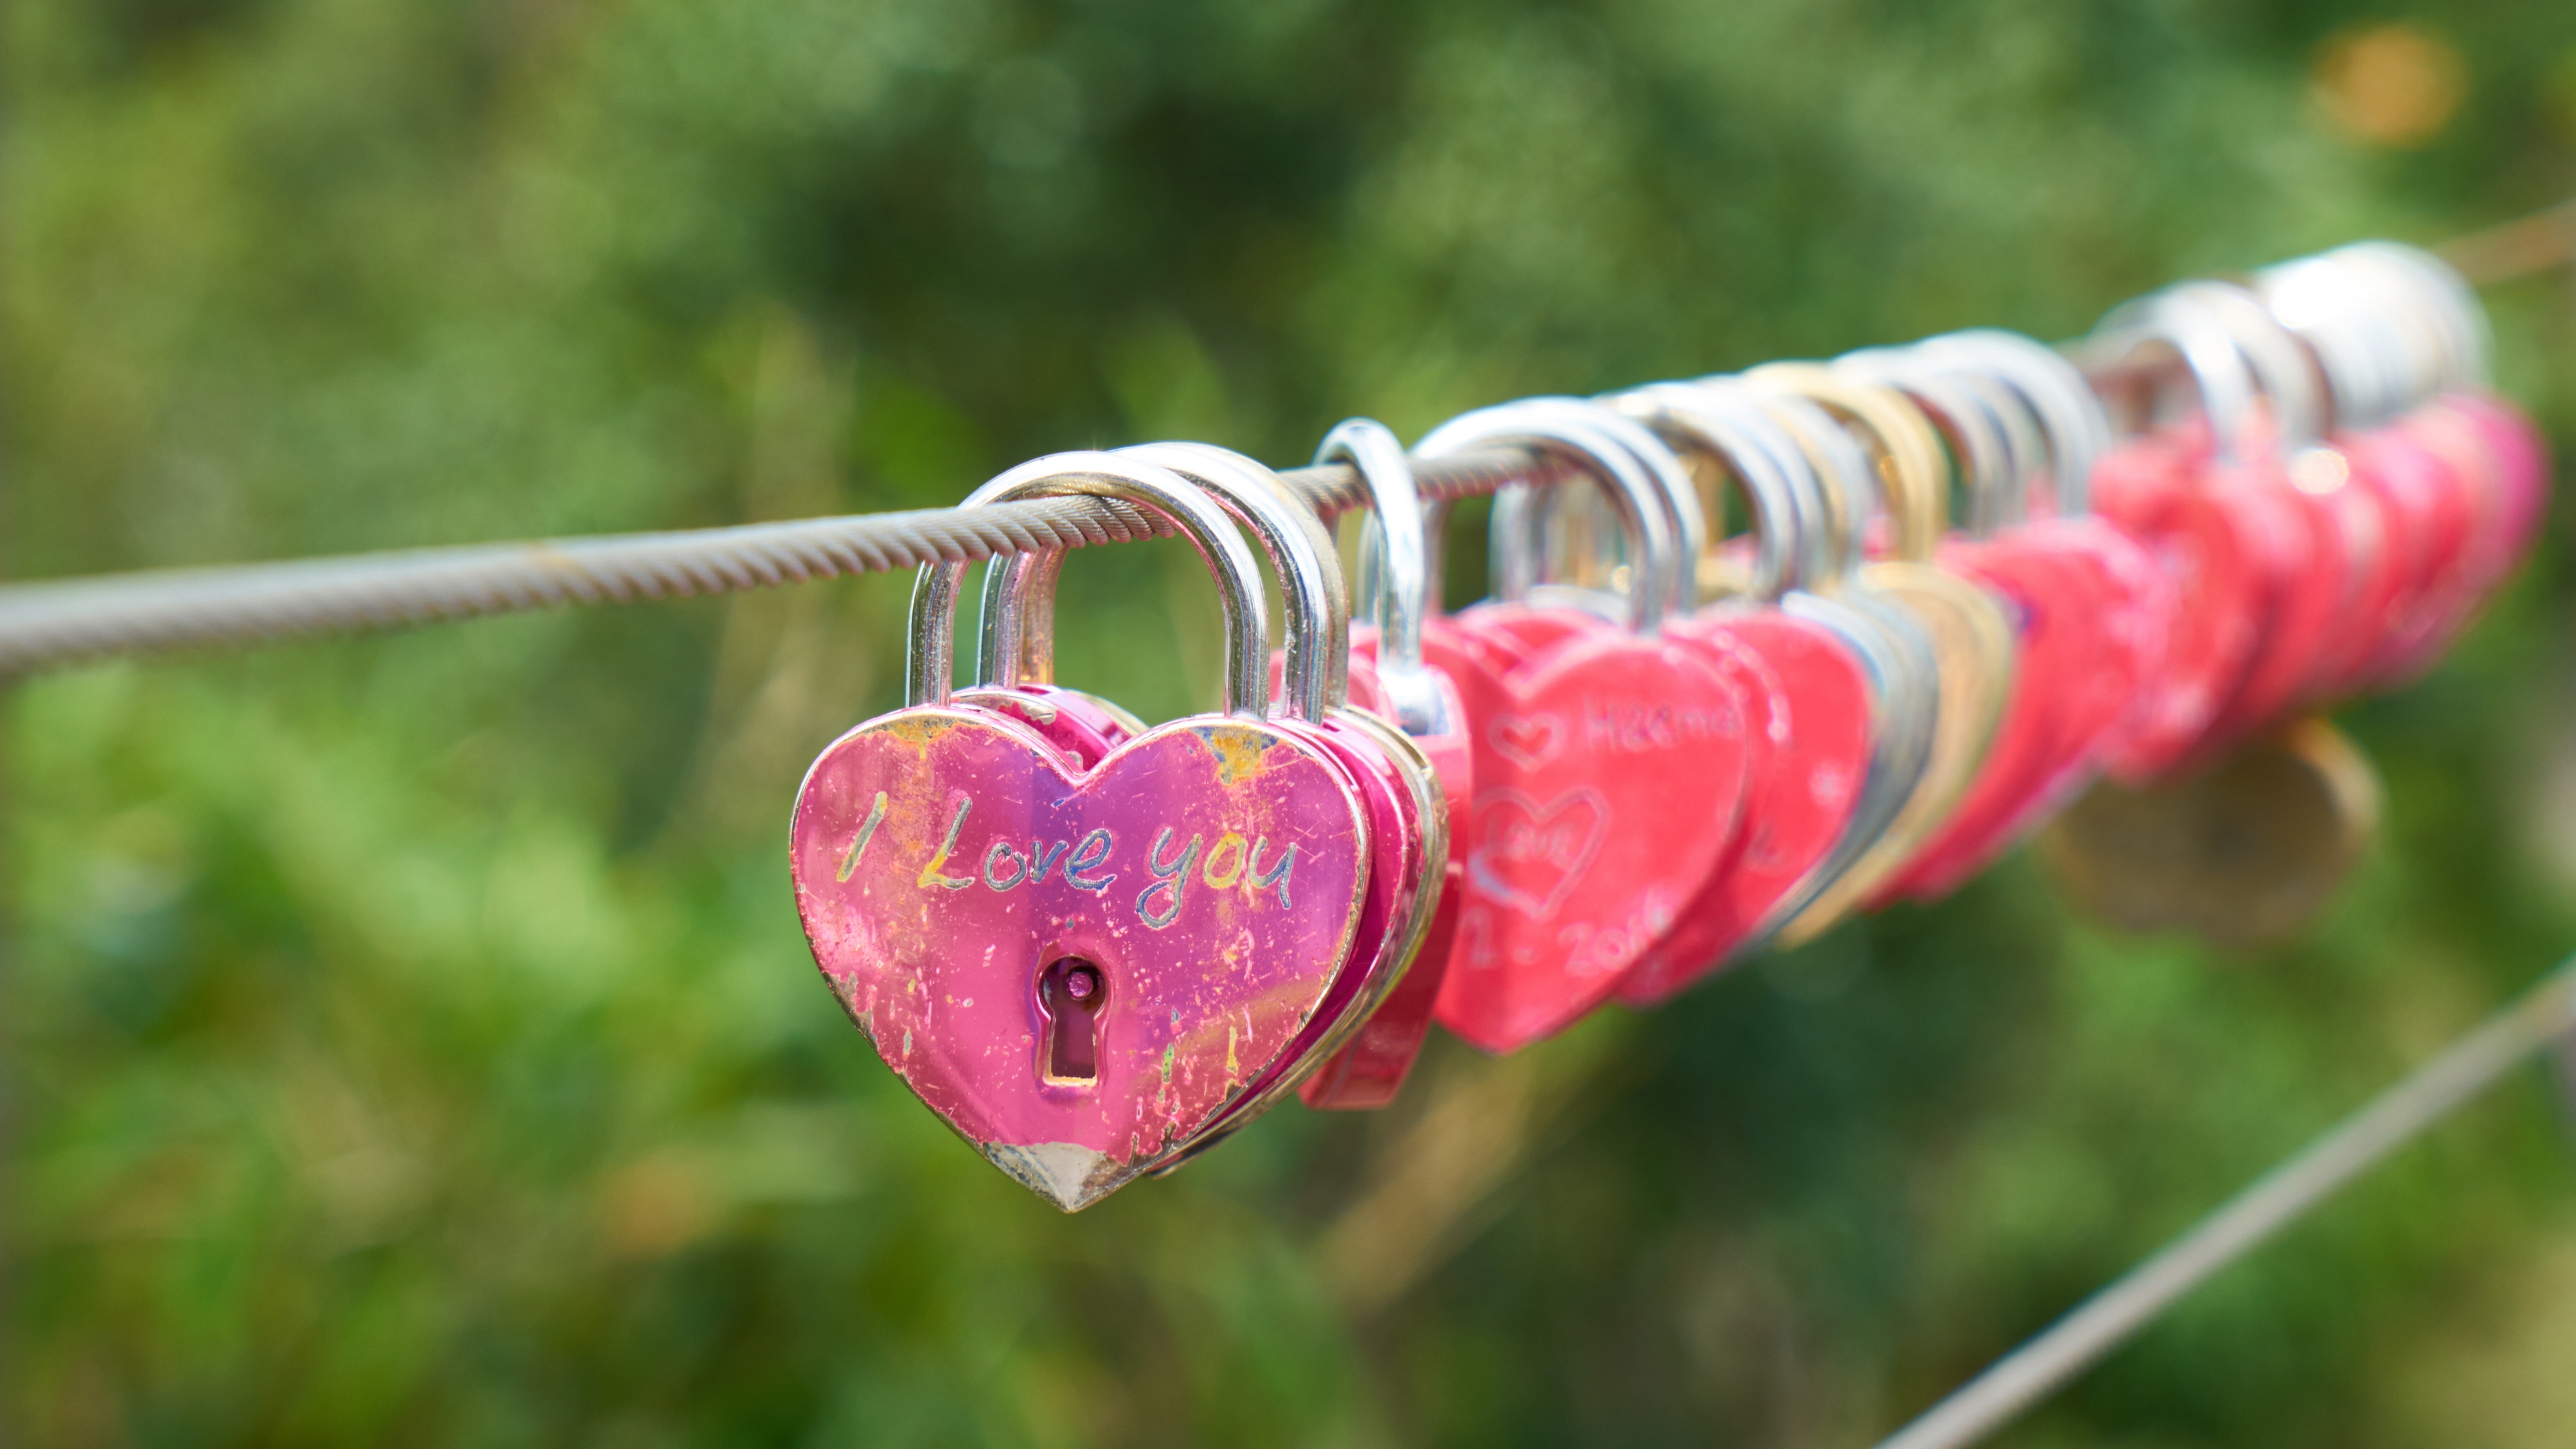 关键桥 锁 爱情锁 - Pixabay上的免费照片 - Pixabay